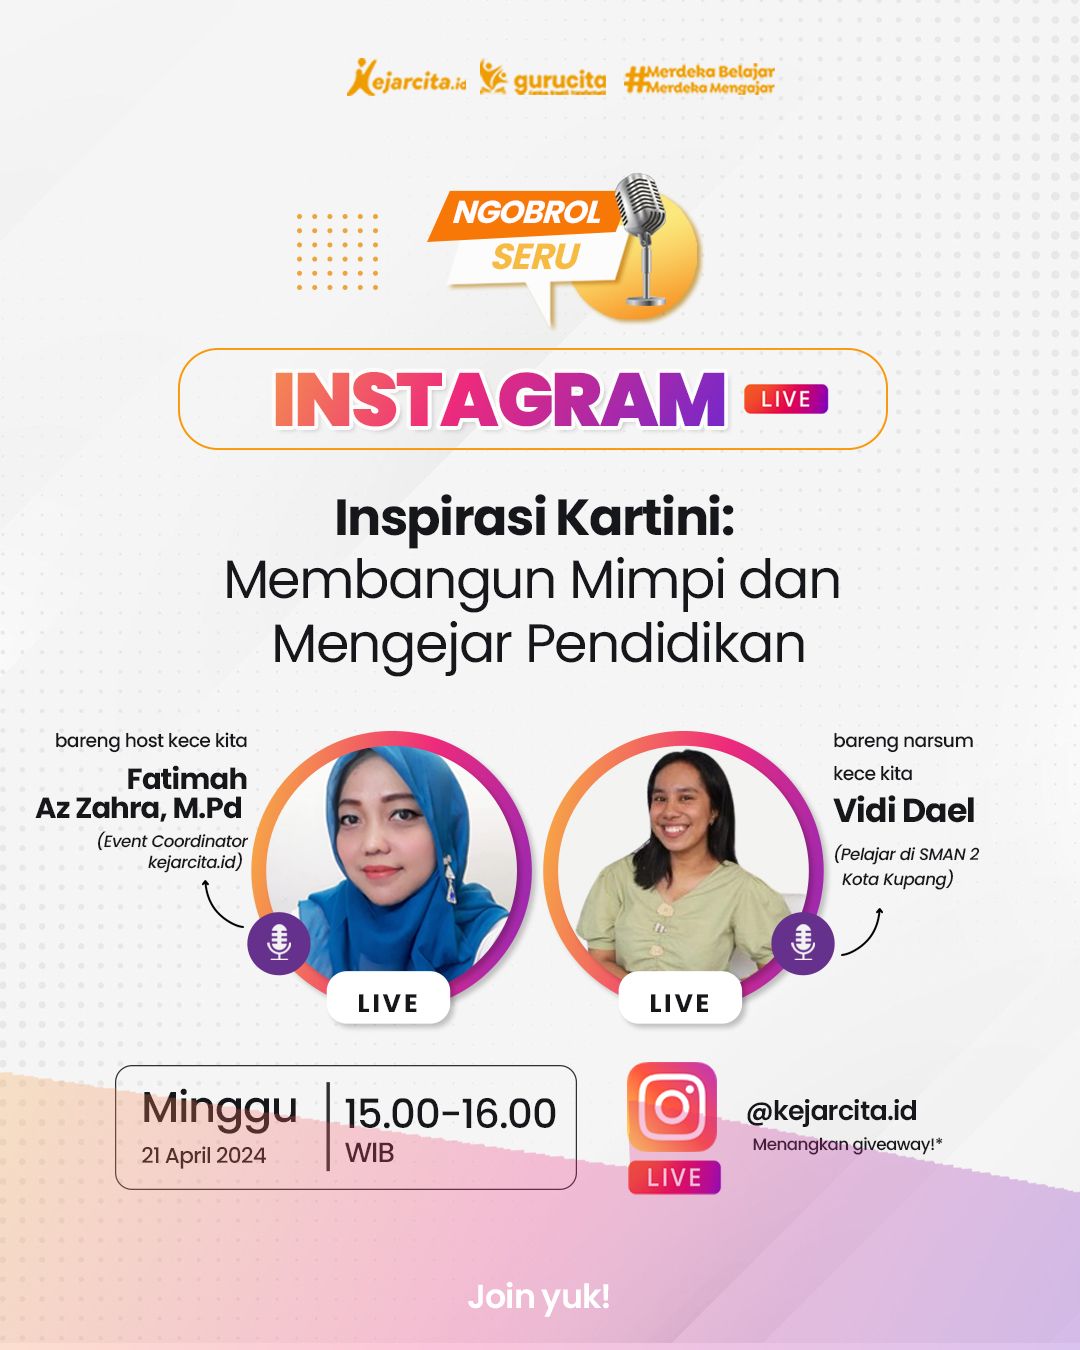 Instagram Live - Inspirasi Kartini: Membangun Mimpi dan Mengejar Pendidikan